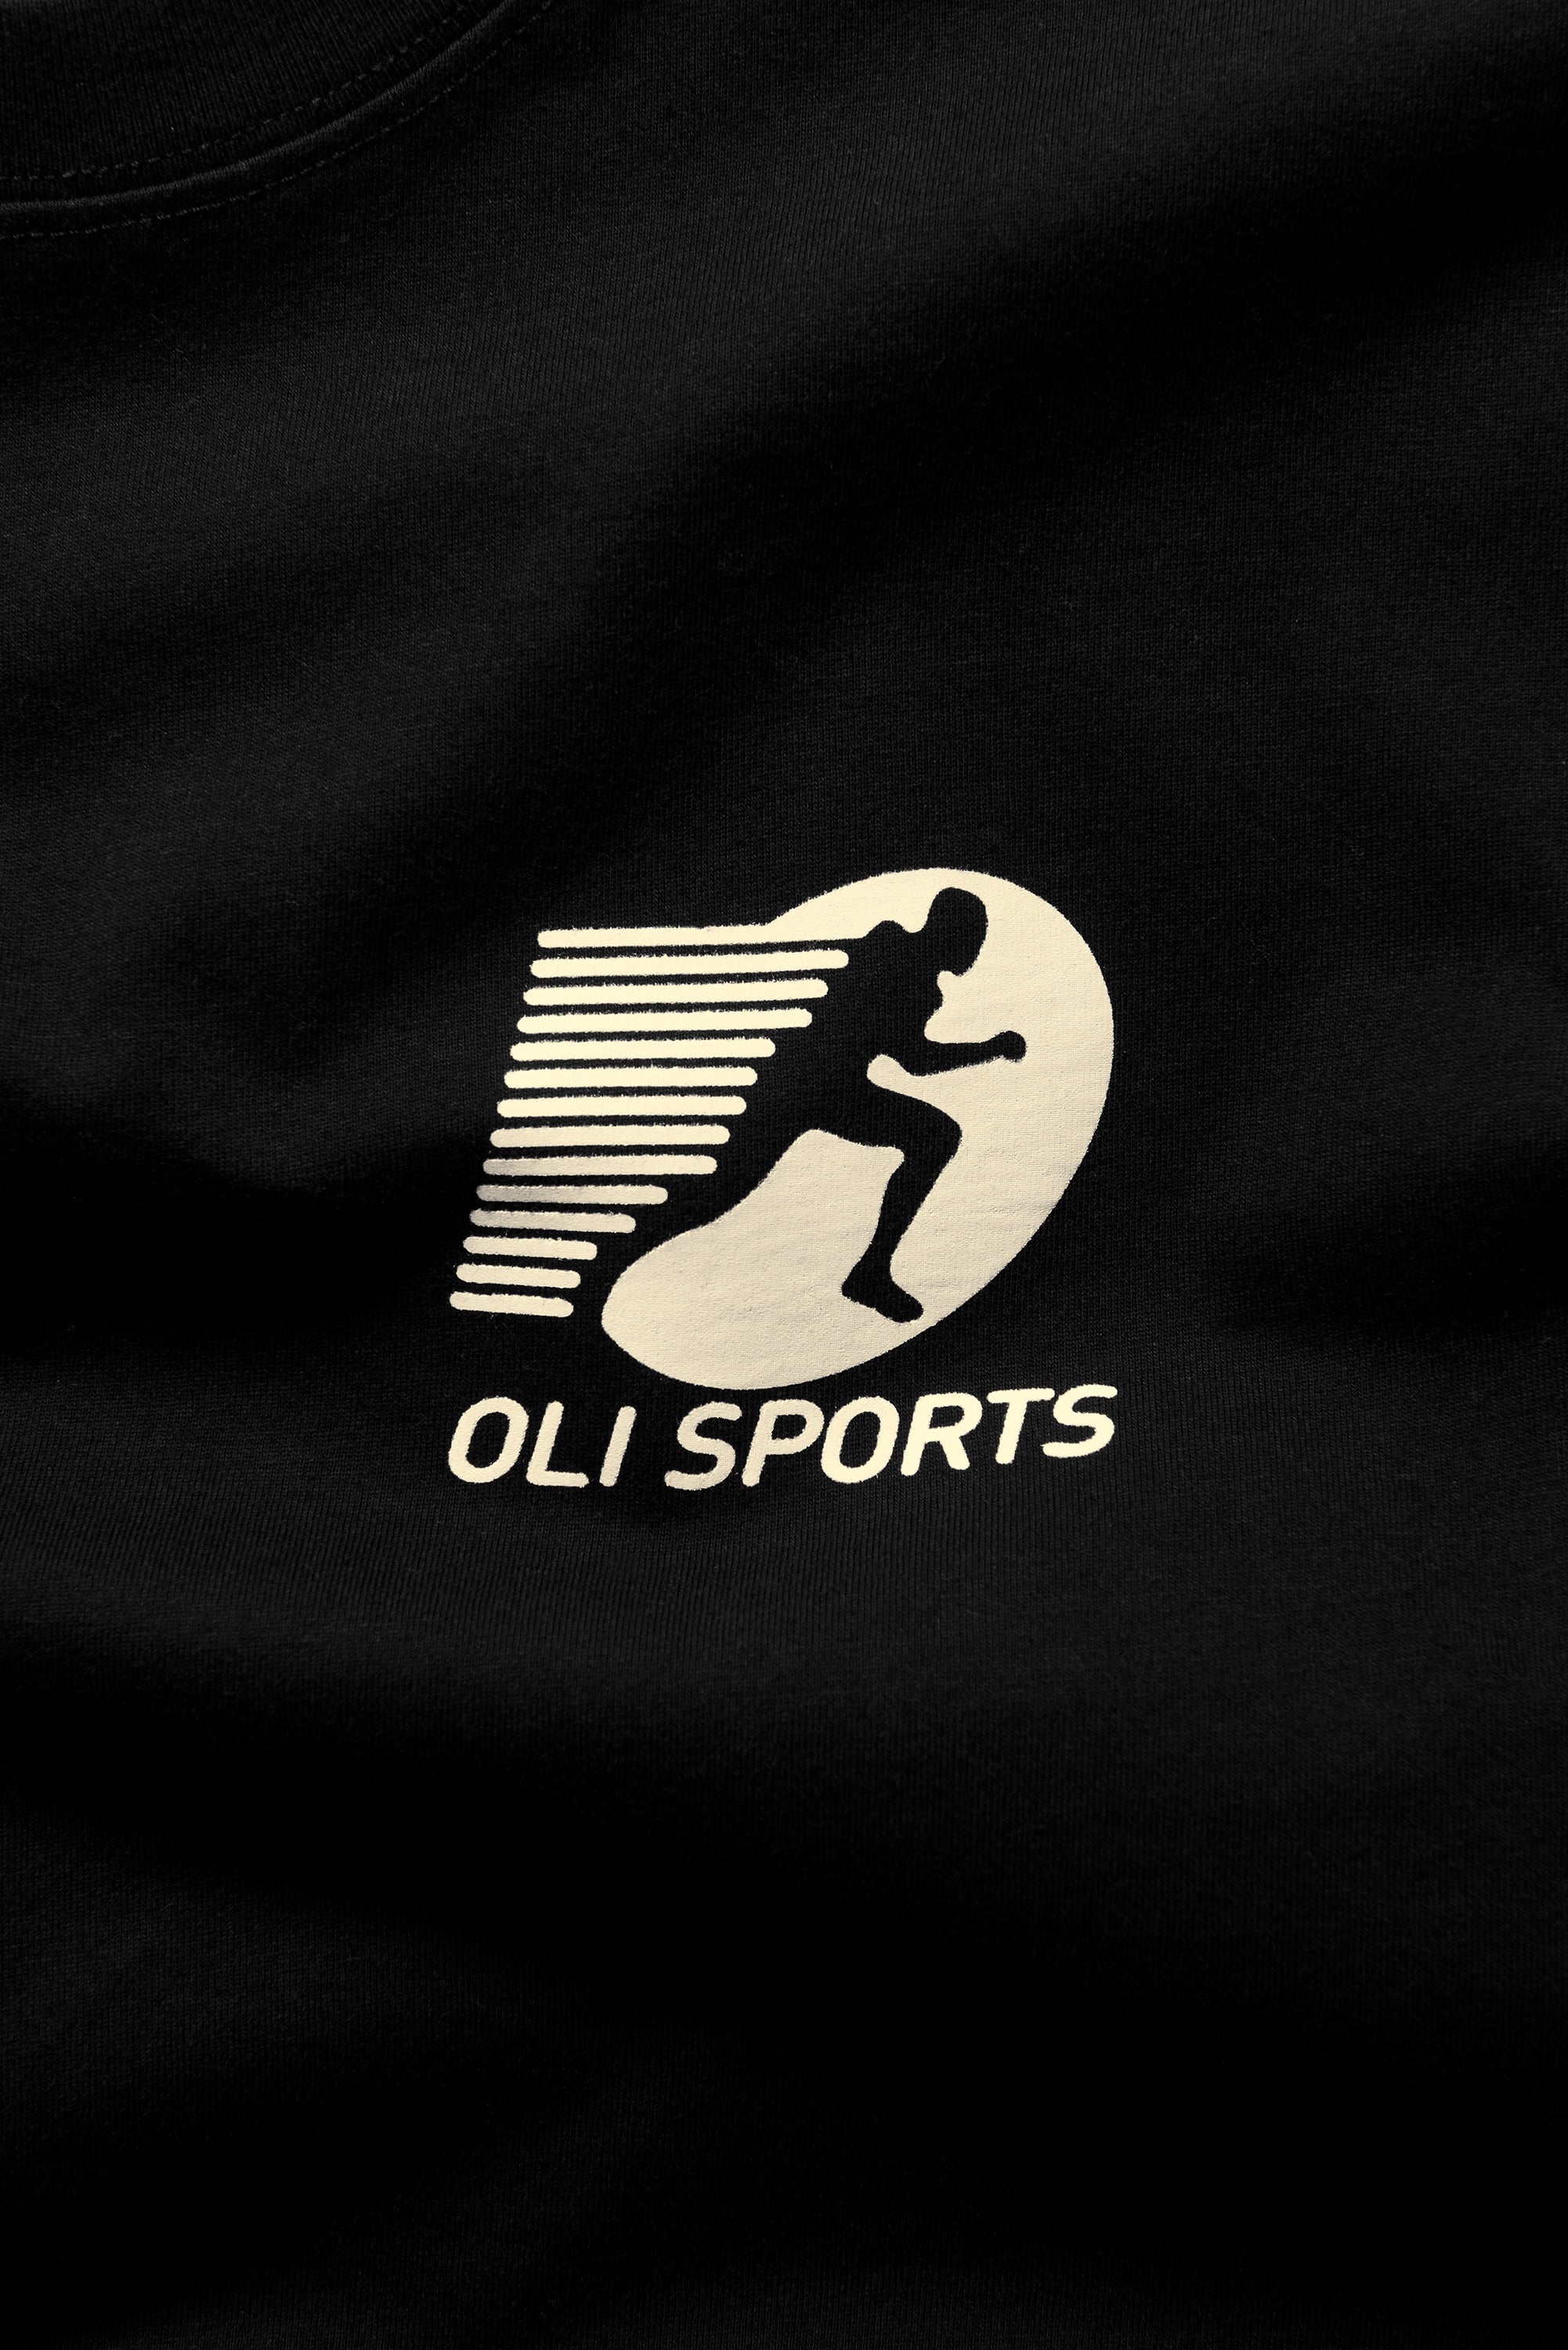 Oli Sports T - Black